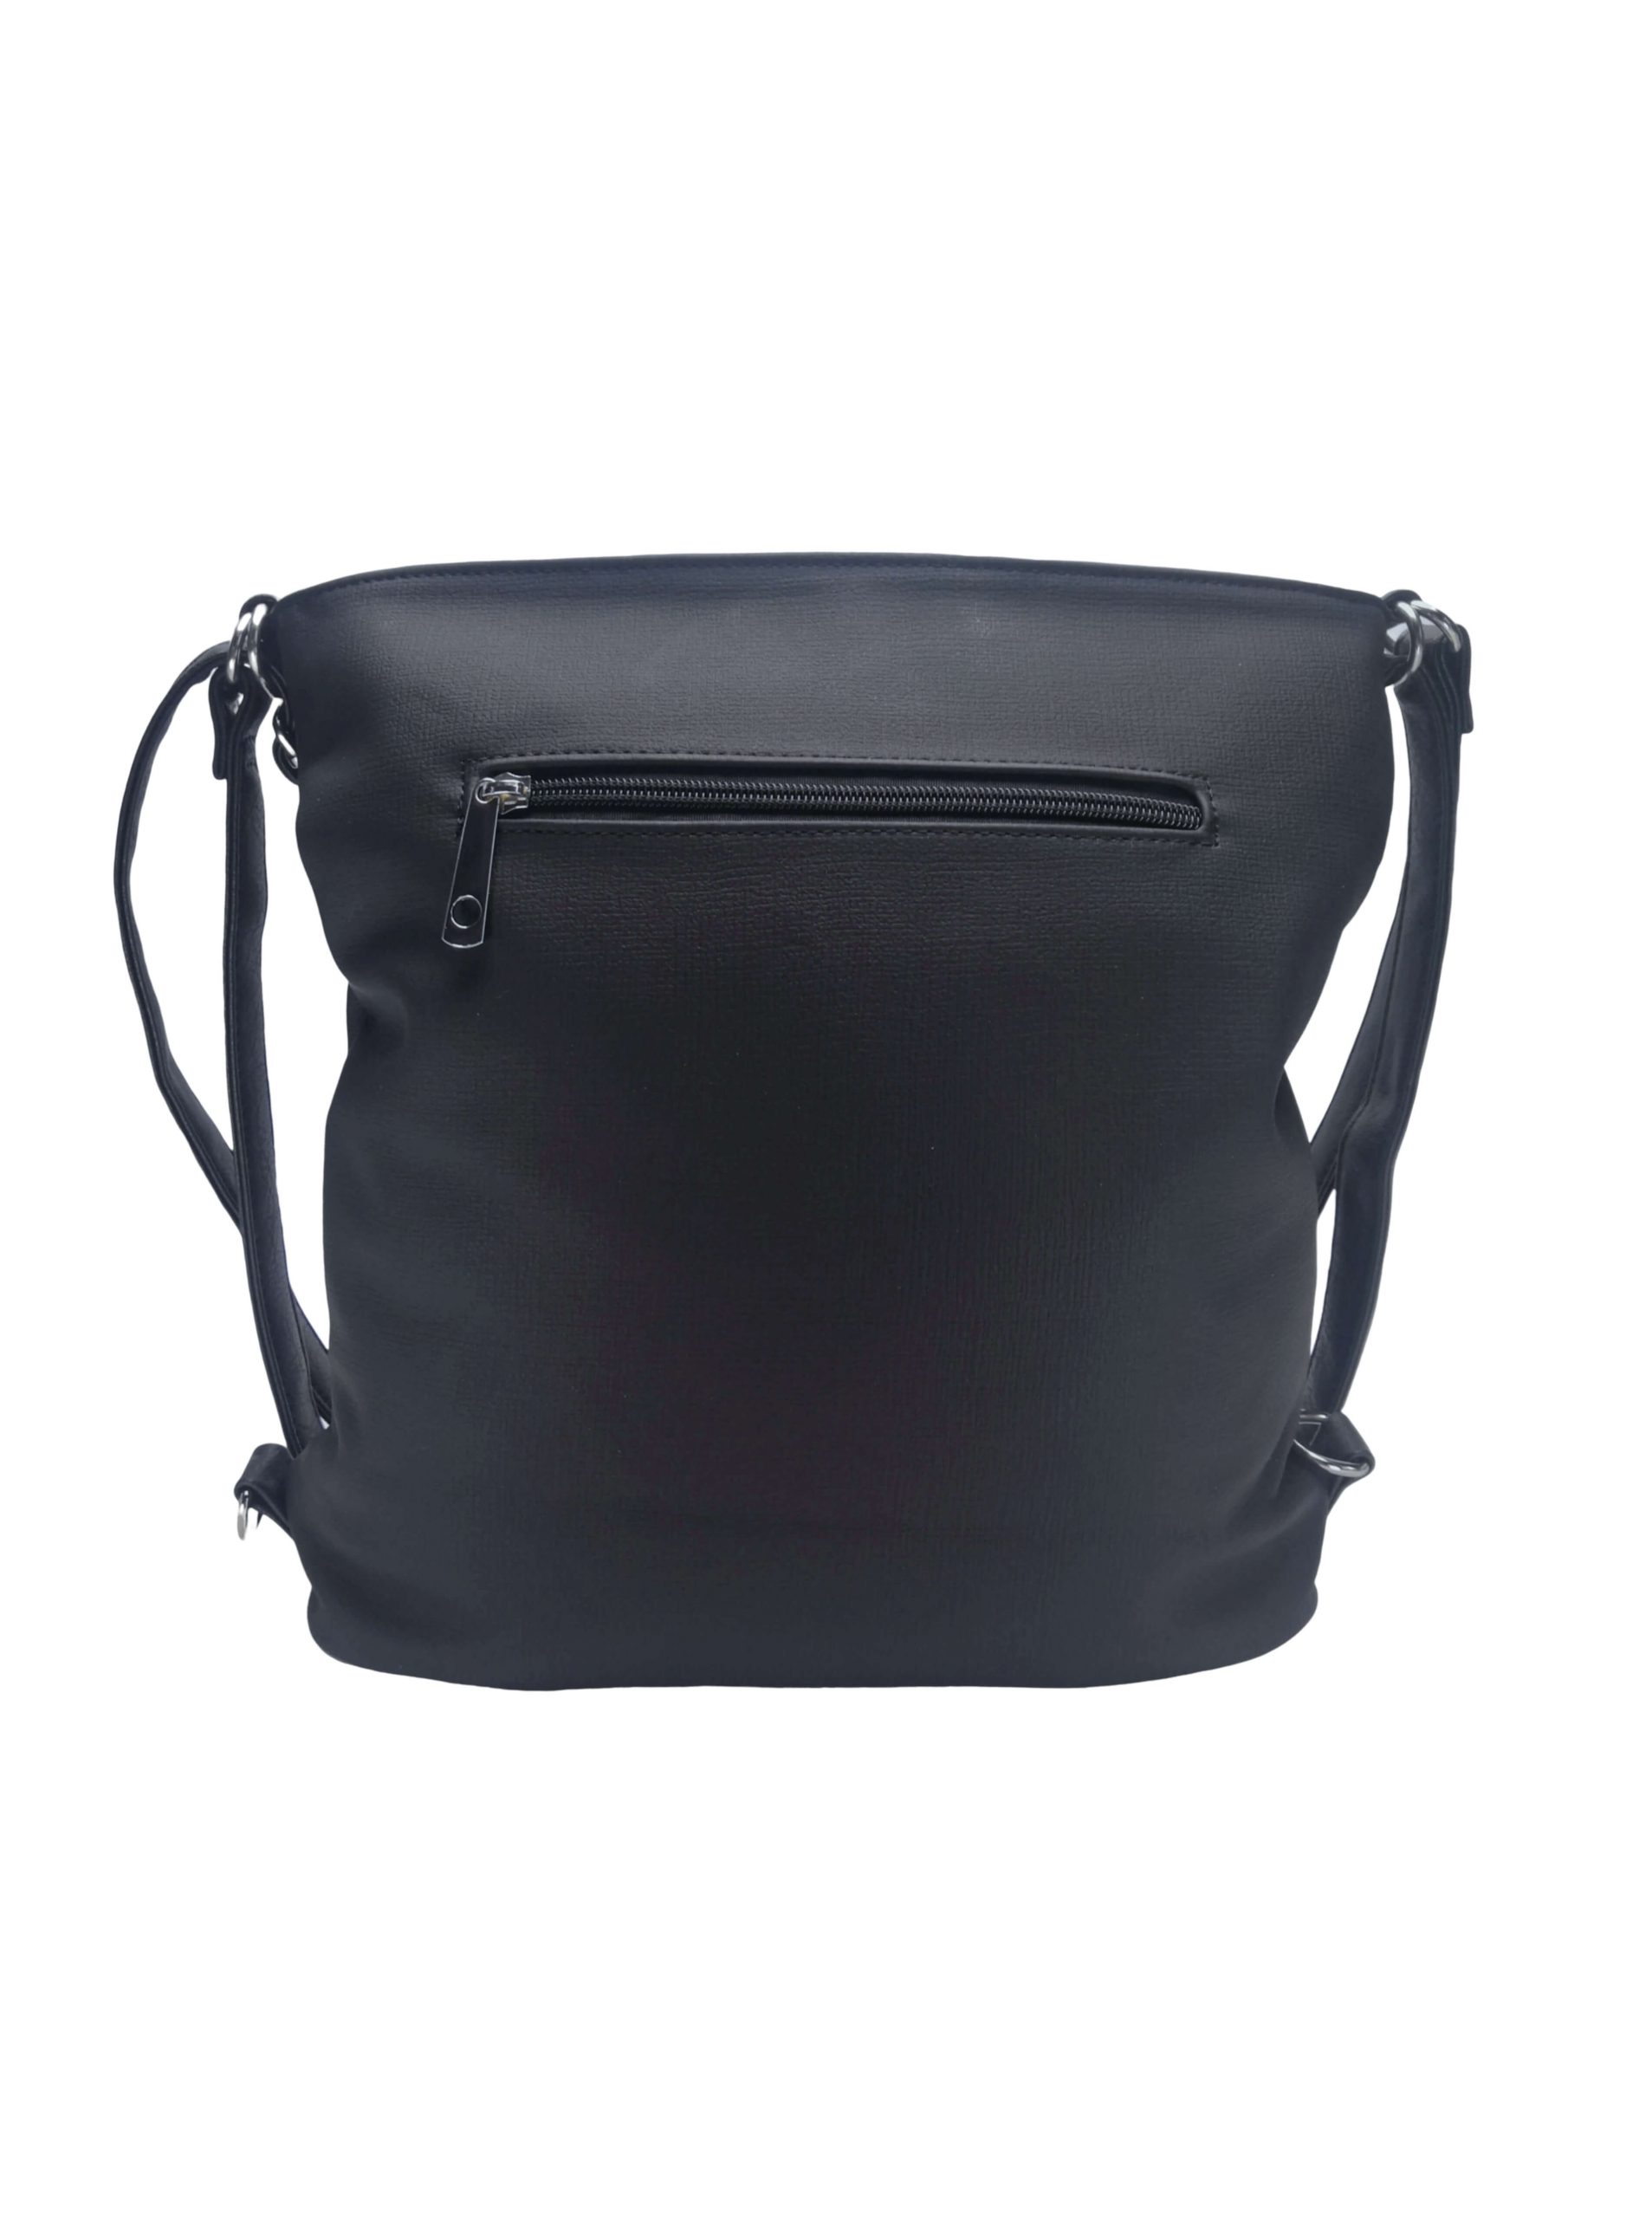 Střední černý kabelko-batoh 2v1 s praktickou kapsou, Tapple, H190062, zadní strana kabelko-batohu